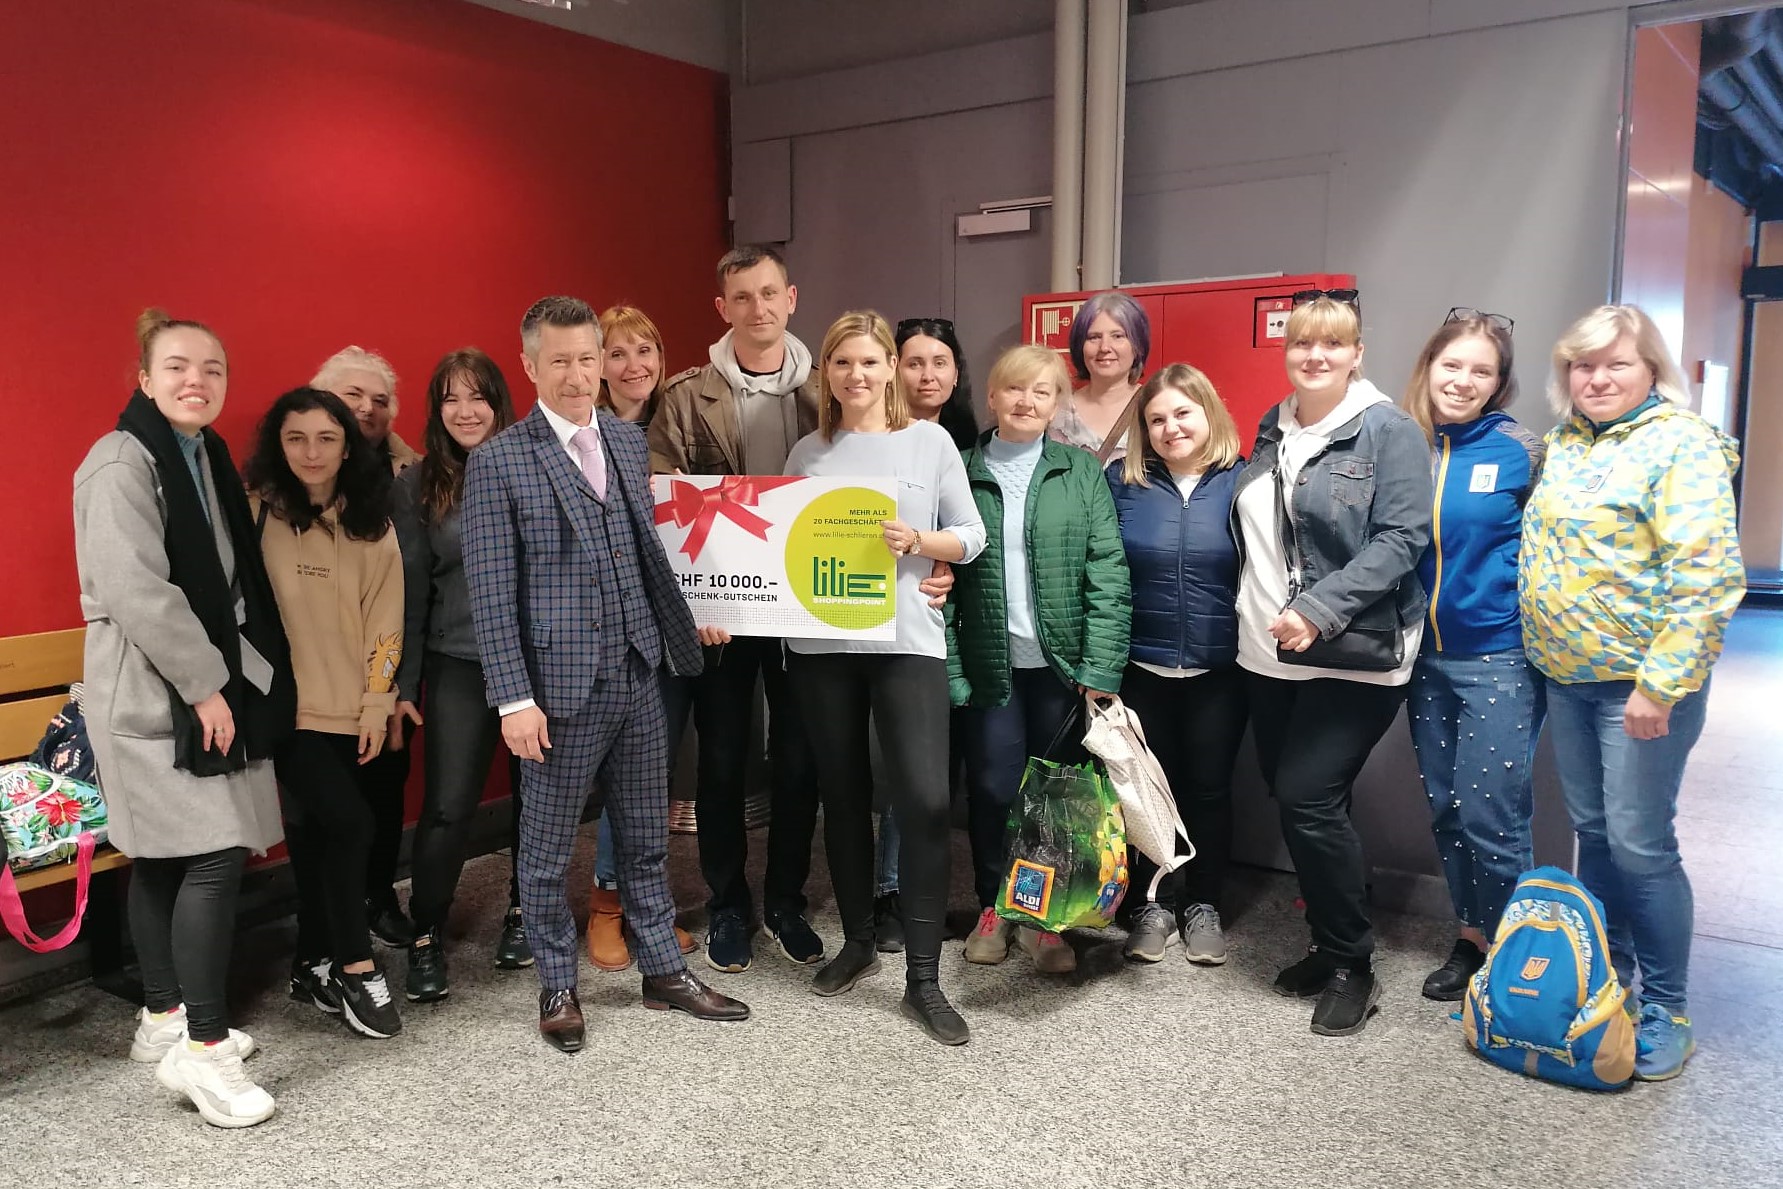 Lilie Shoppingpoint spendet Gutscheine über 10'000 Franken für ukrainische Flüchtlinge